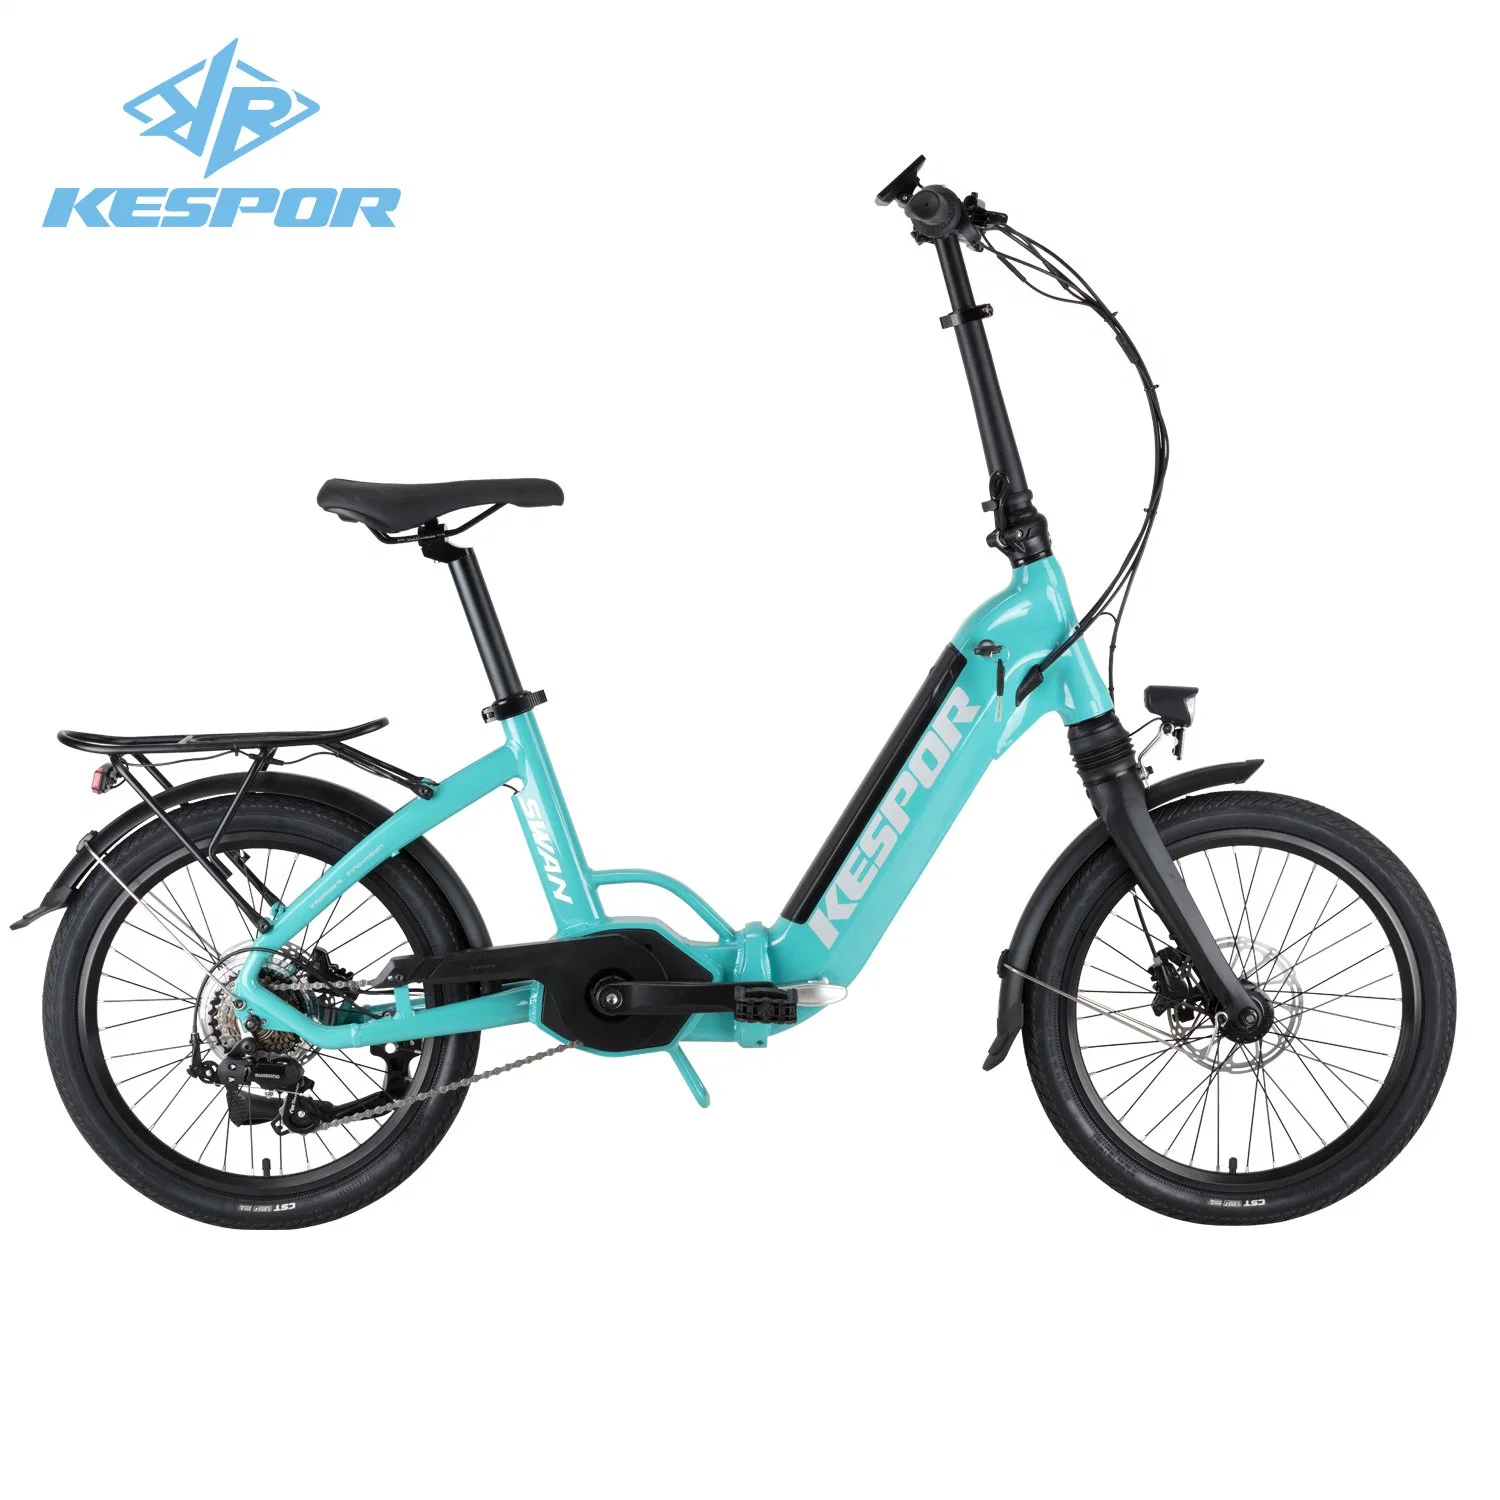 Nouveau modèle tendance 20 pouces léger pliable City Bike électrique Vélo avec moteur 36 V 250 W.